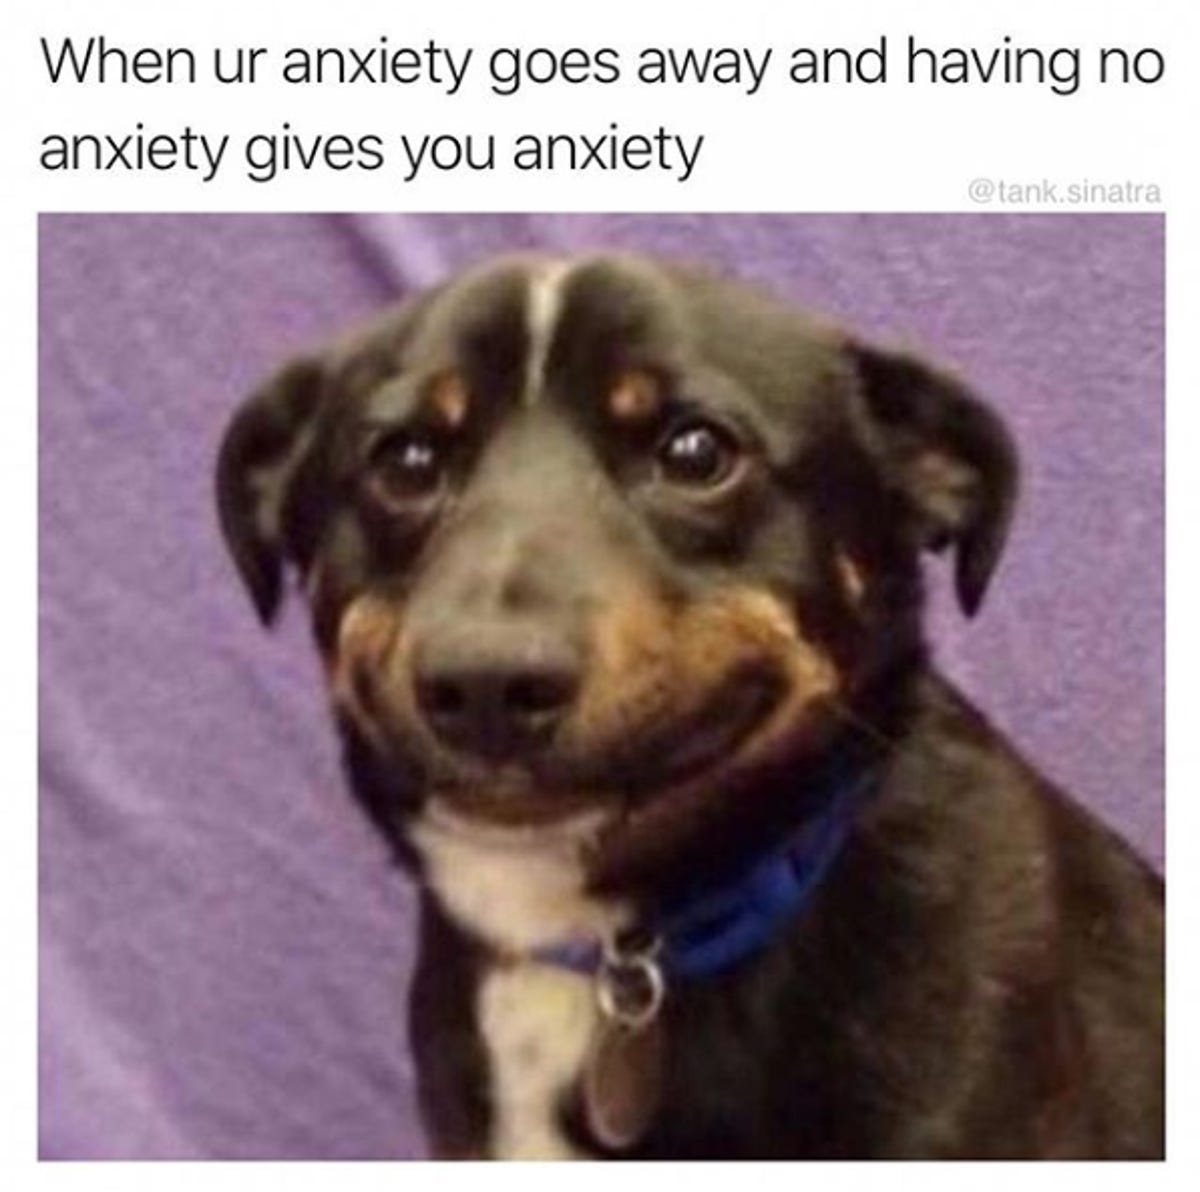 Memes on Instagram, Reddit bring comfort to people struggling with  depression - CNET